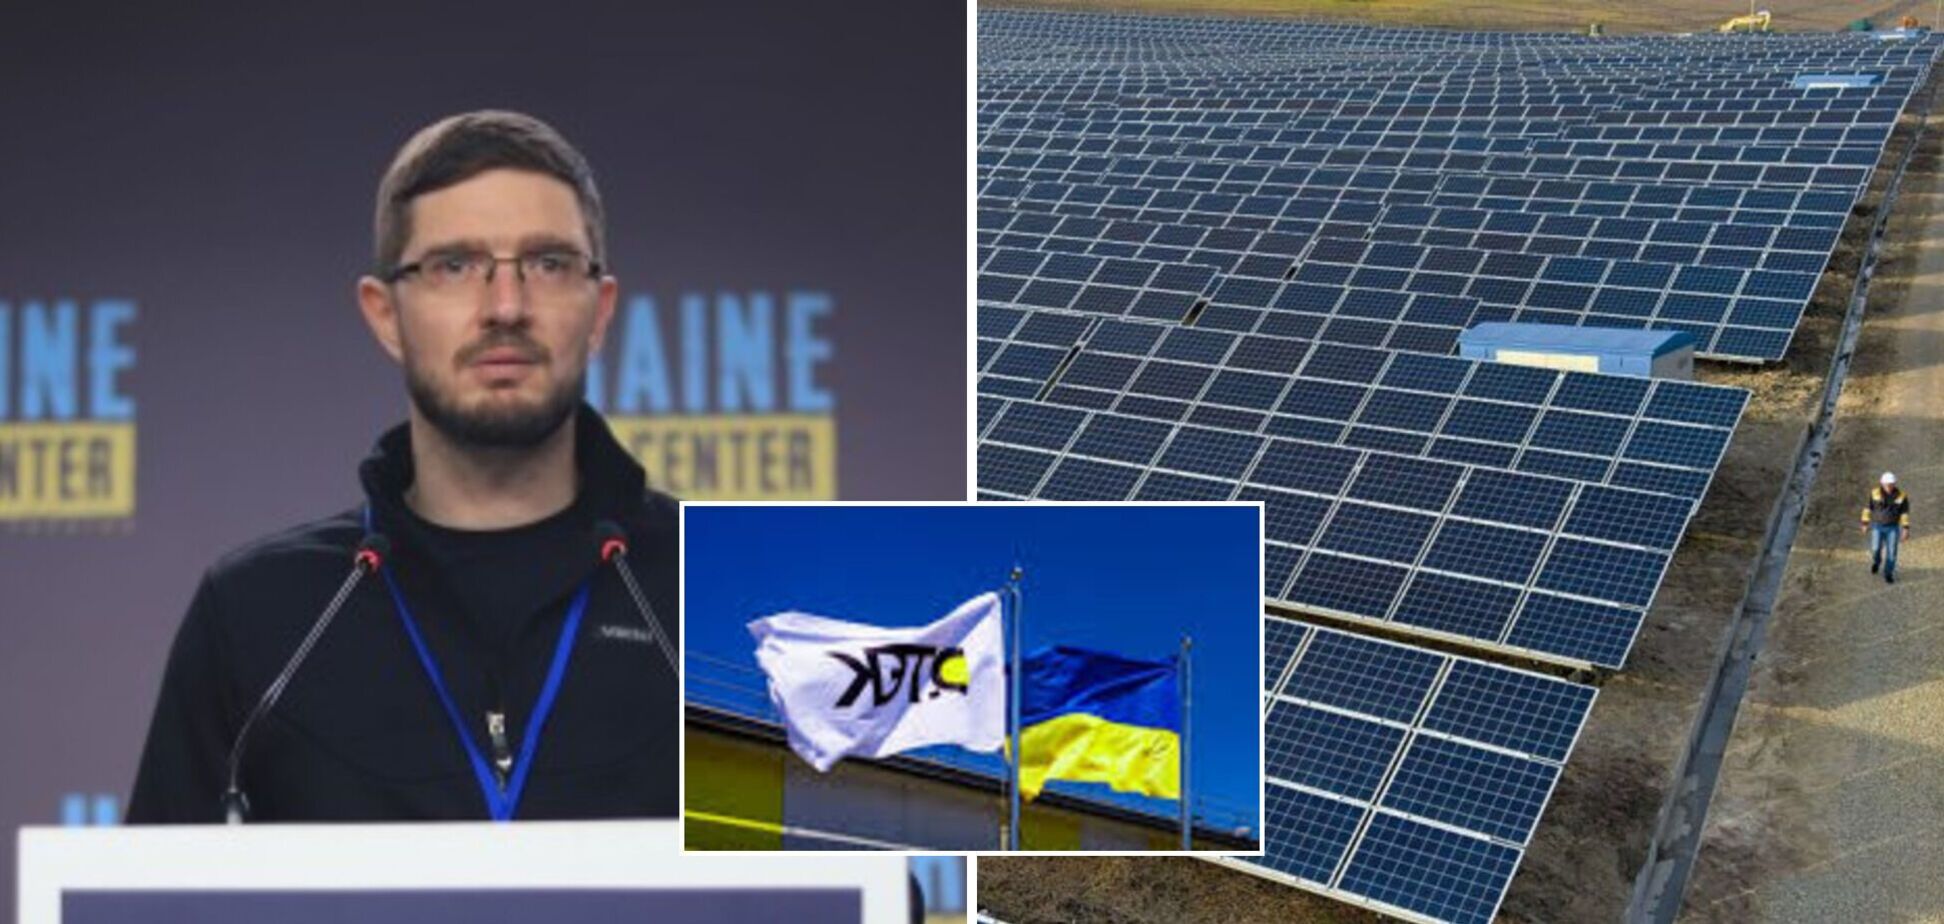 Интеграция в европейскую энергосистему дает возможность привлекать дополнительные инвестиции в Украину, – ДТЭК